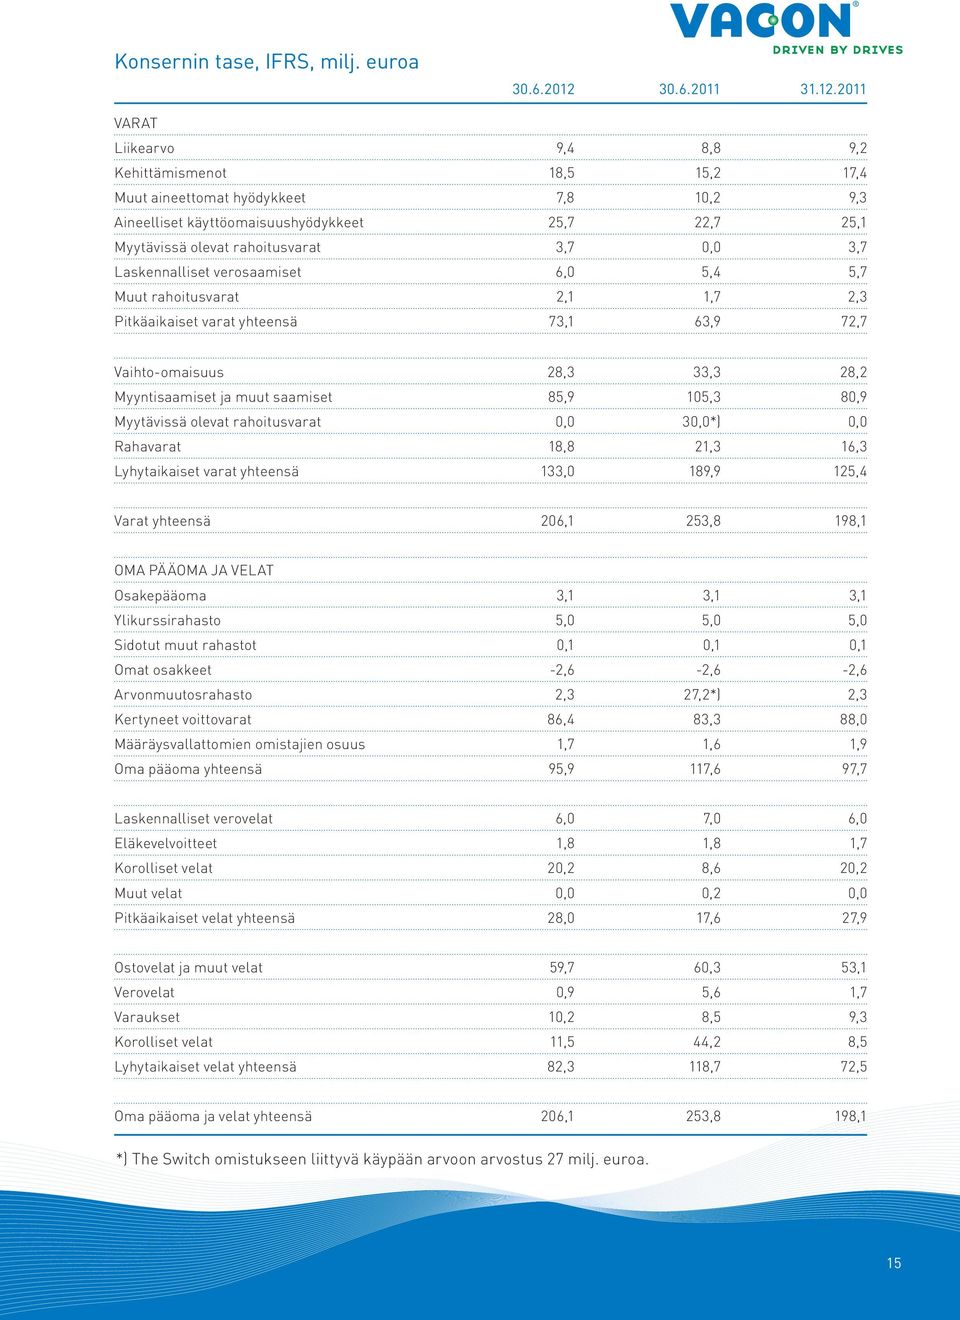 2011 VARAT Liikearvo 9,4 8,8 9,2 Kehittämismenot 18,5 15,2 17,4 Muut aineettomat hyödykkeet 7,8 10,2 9,3 Aineelliset käyttöomaisuushyödykkeet 25,7 22,7 25,1 Myytävissä olevat rahoitusvarat 3,7 0,0